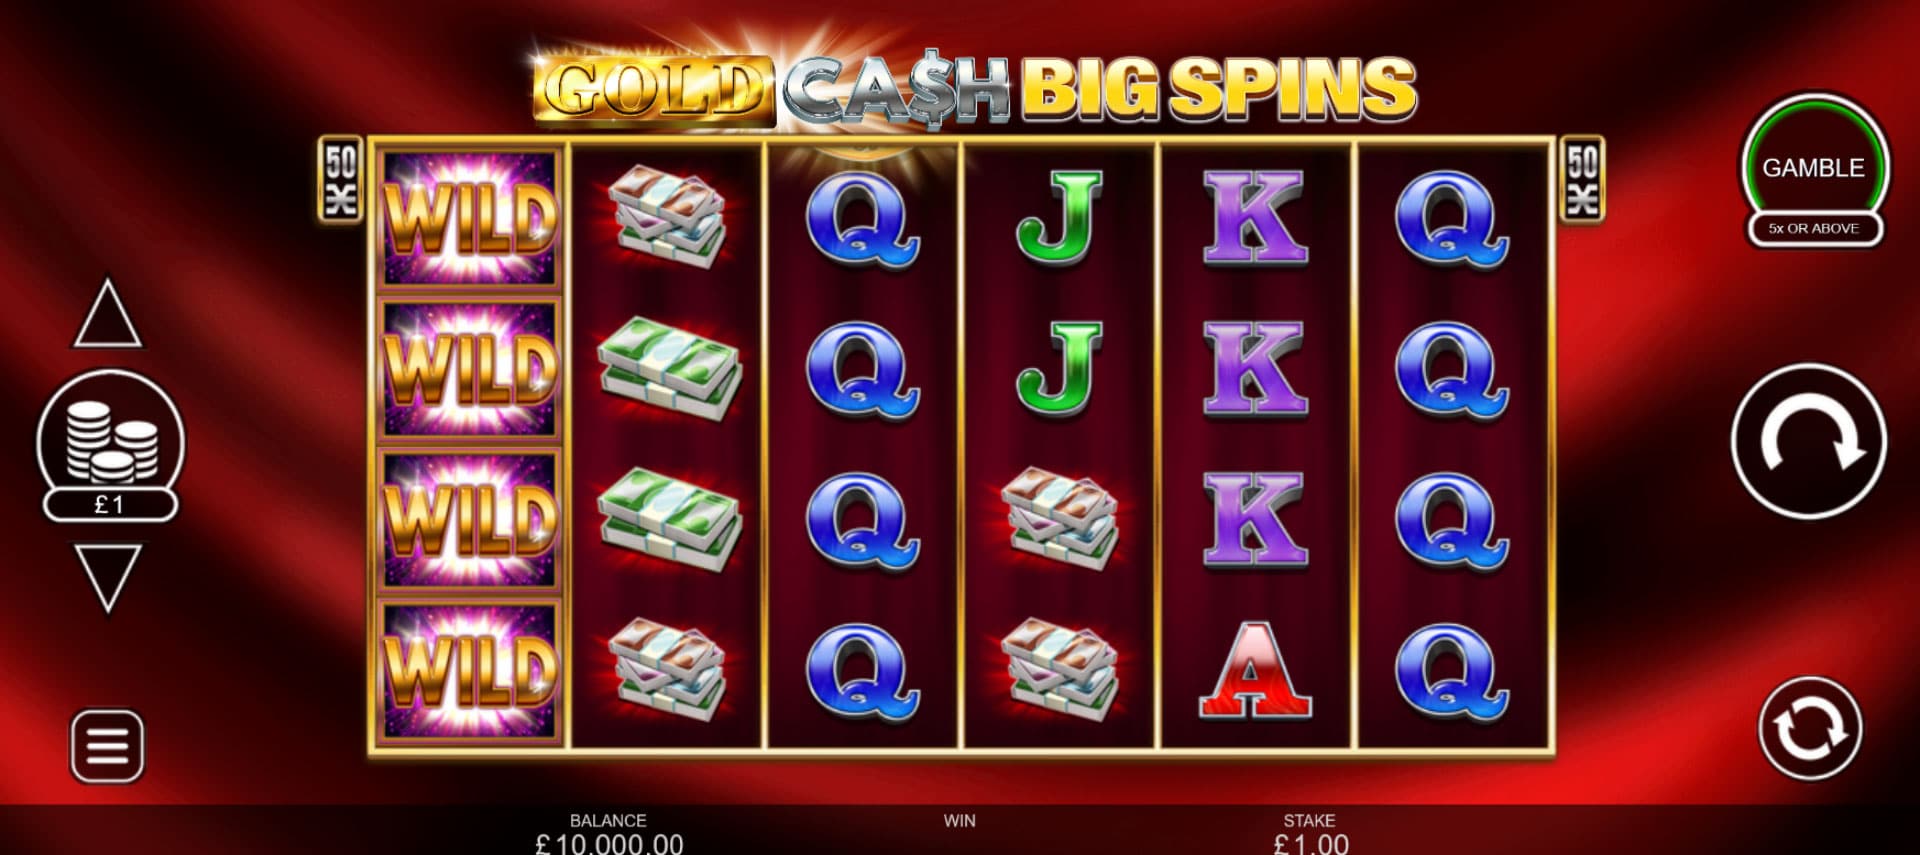 schermata di gioco della slot gold cash big spins